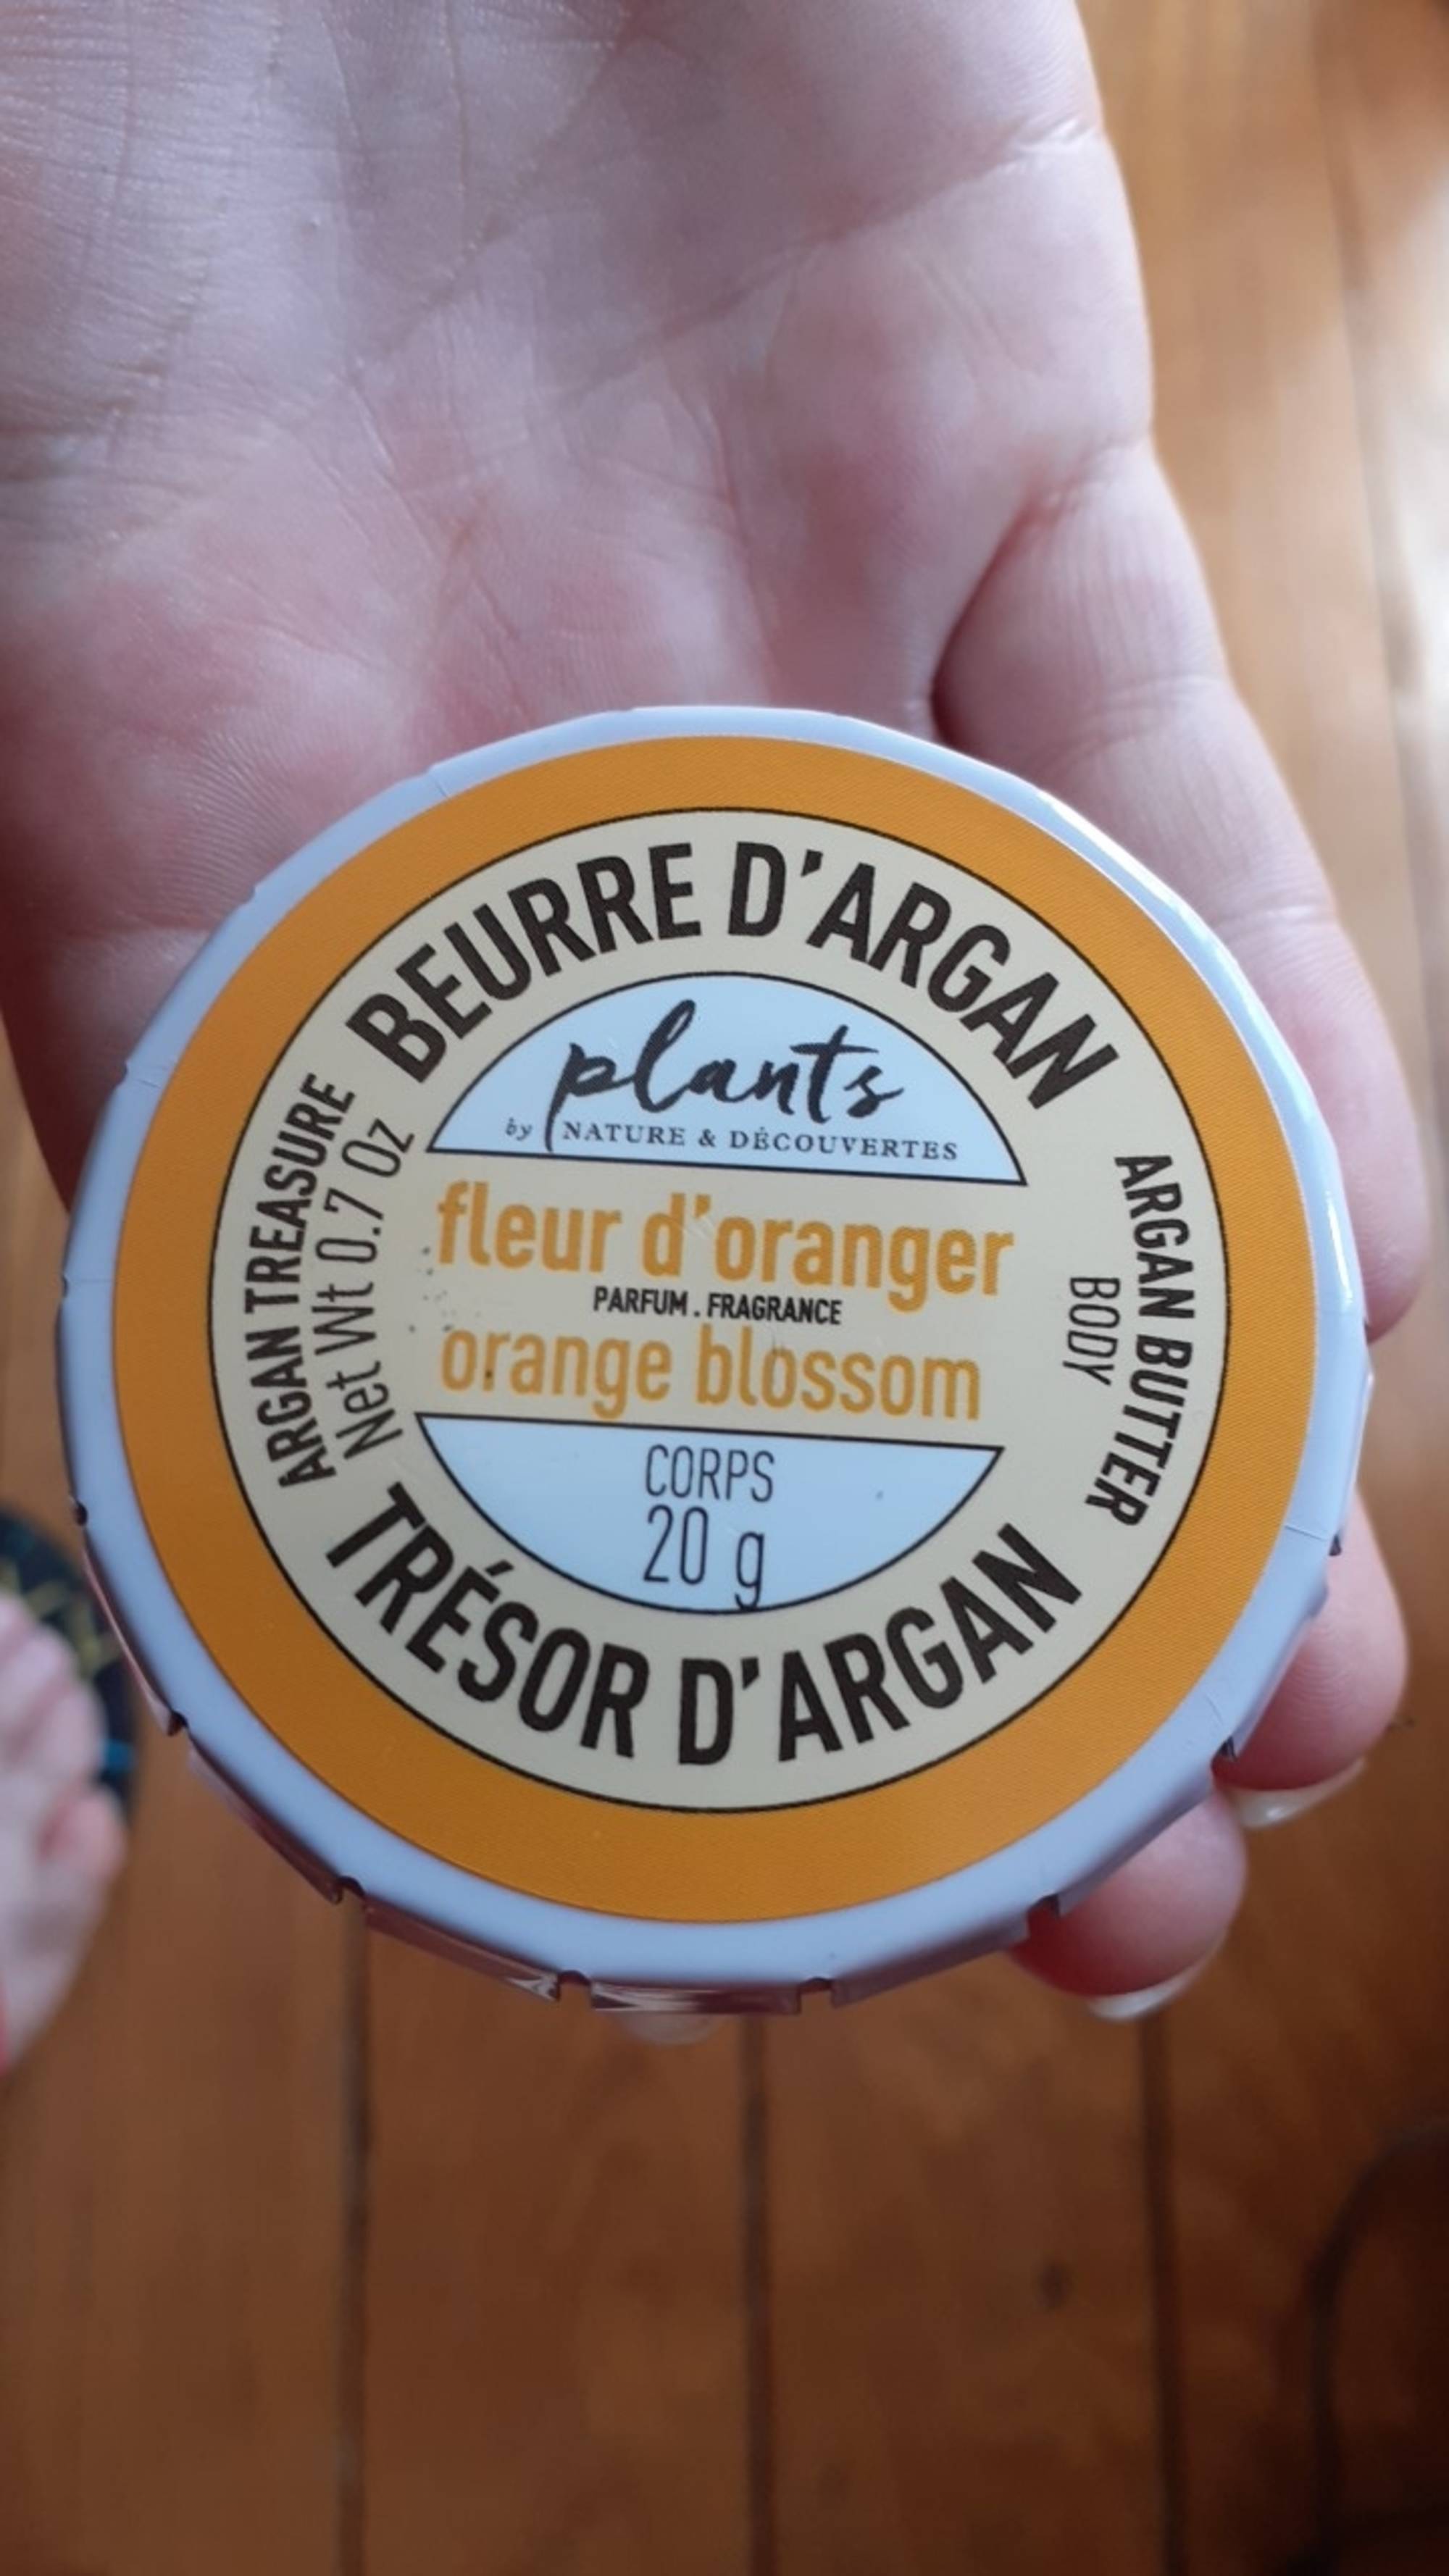 NATURE & DÉCOUVERTES - Fleur d'oranger - Beurre d'argan - Corps